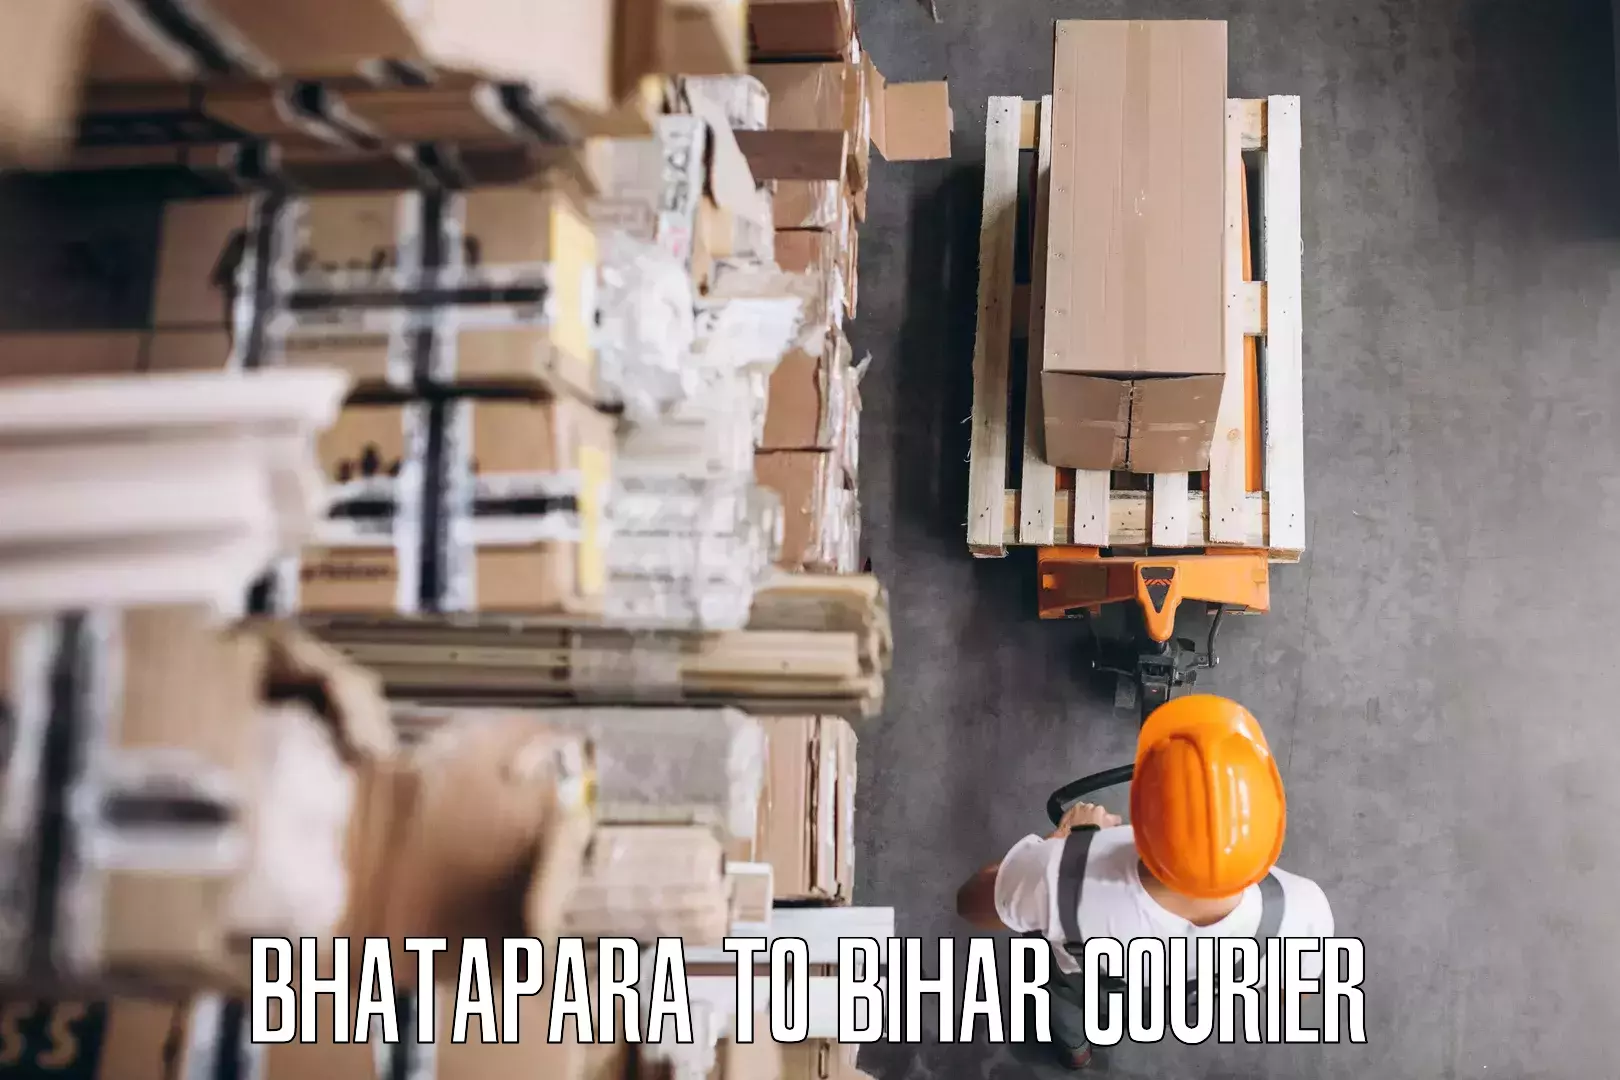 Skilled furniture movers Bhatapara to Dhaka